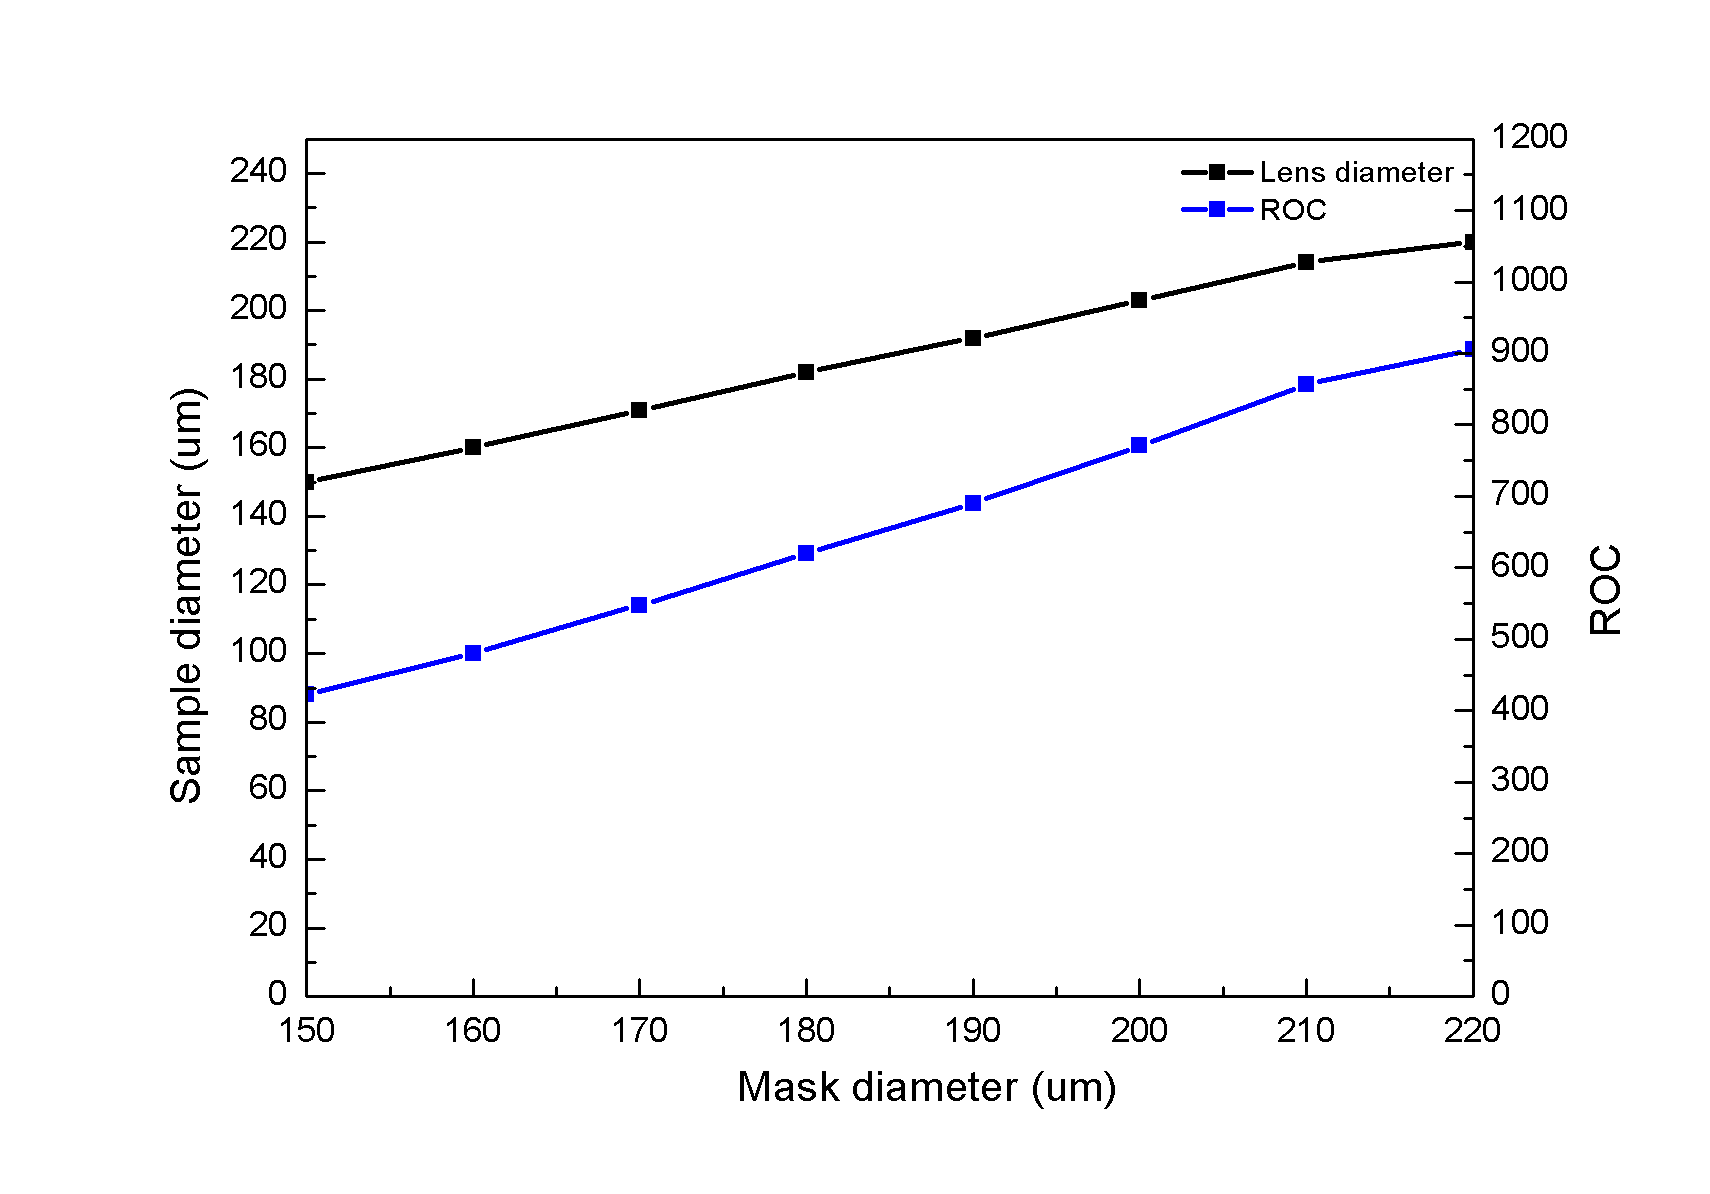 Lens diameter/Radius of curvature vs. Mask diameter